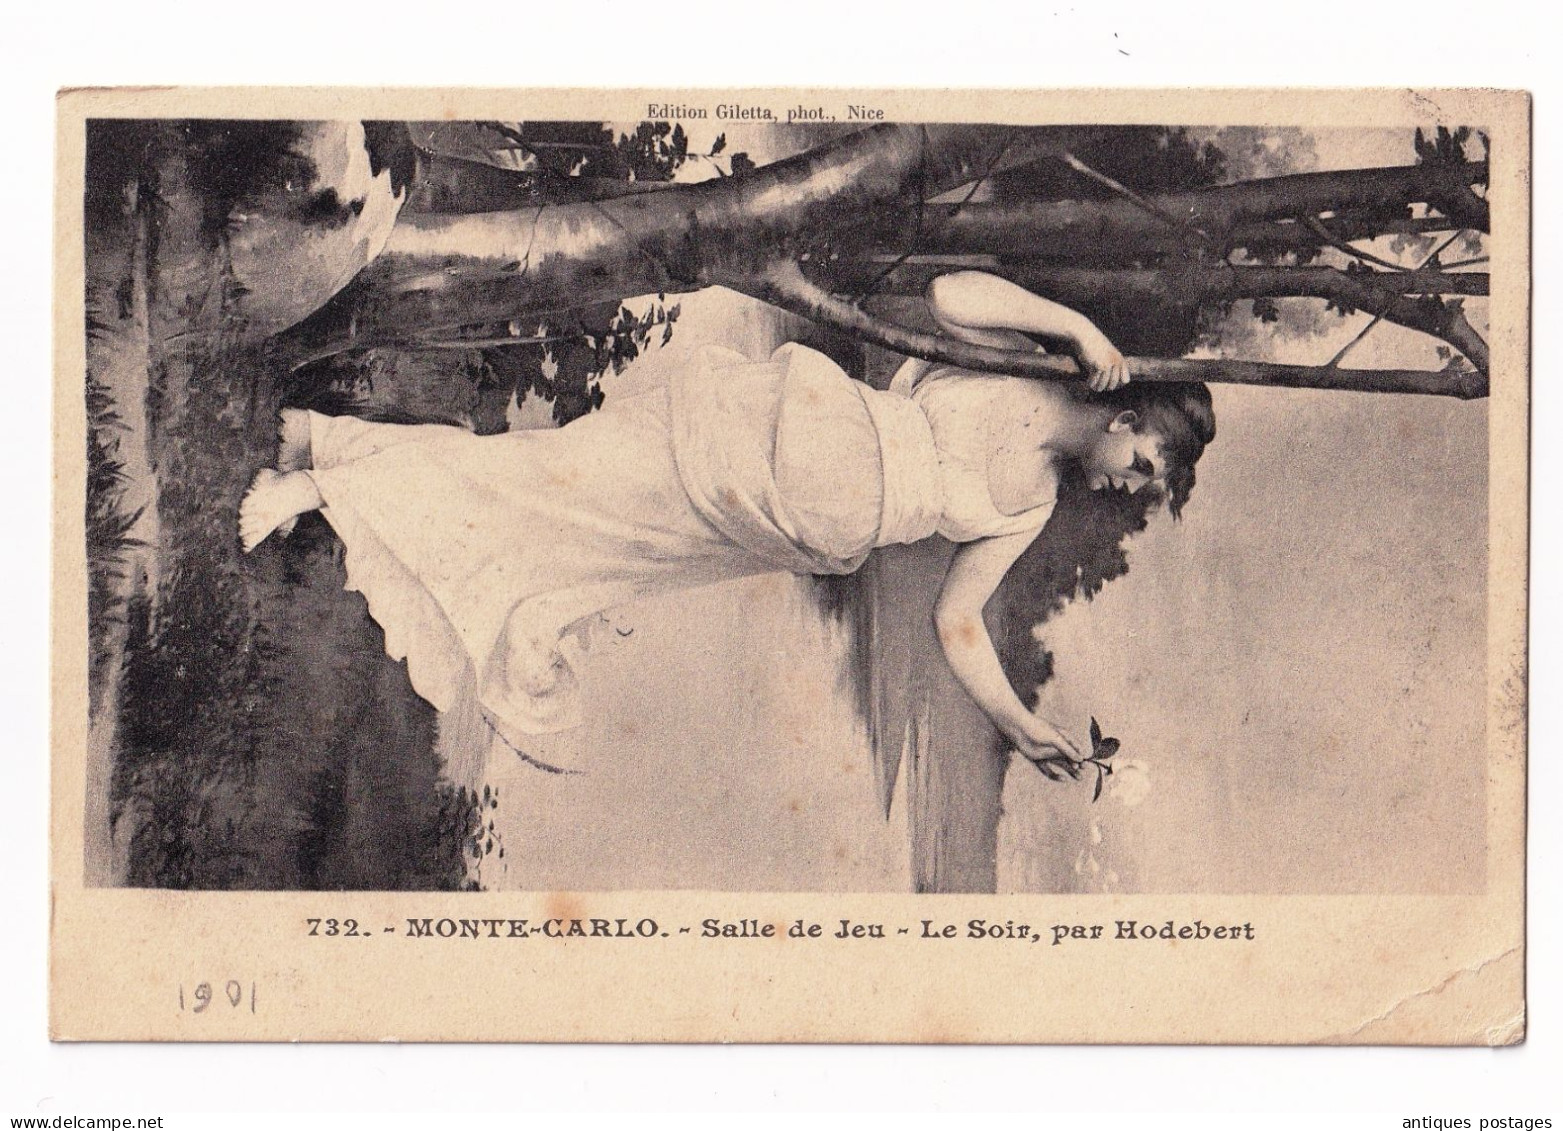 Carte Postale 1908 Monte Carlo Monaco Chepoix Oise Salle De Jeu - Peinture Le Soir Par Hodebert - Briefe U. Dokumente